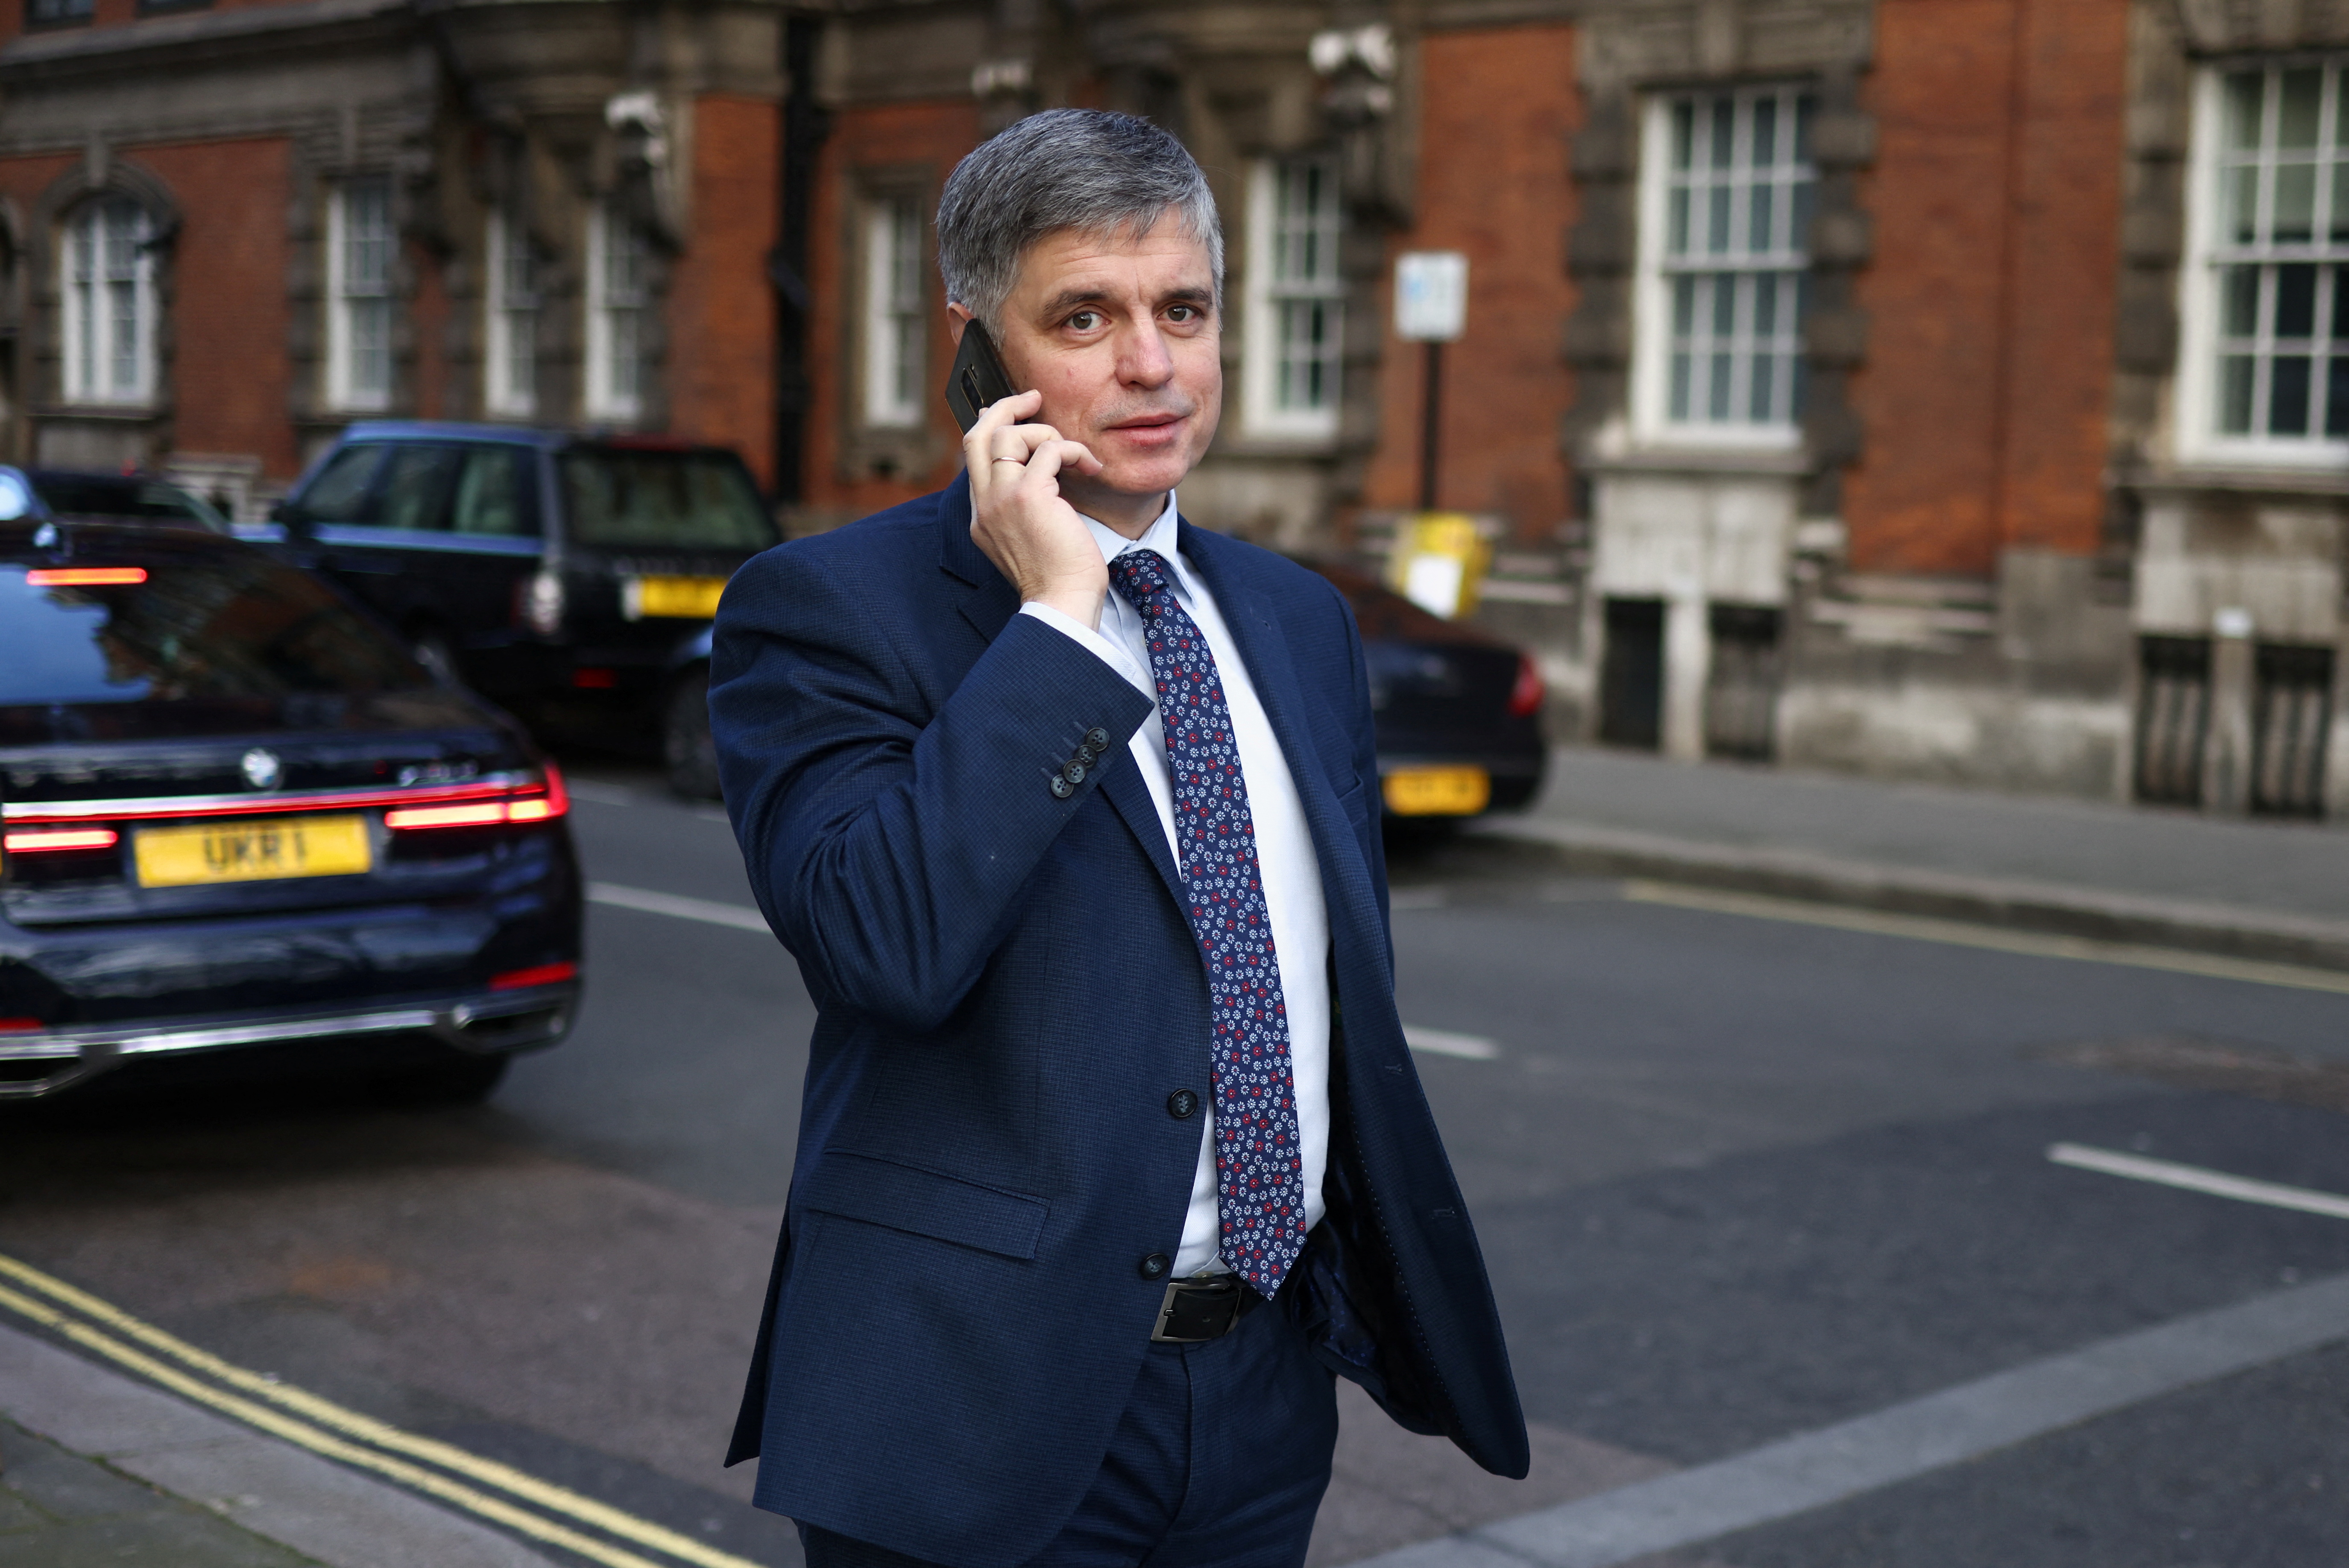 Ukraine's ambassador to the UK, Vadym Prystaiko walks in Westminster